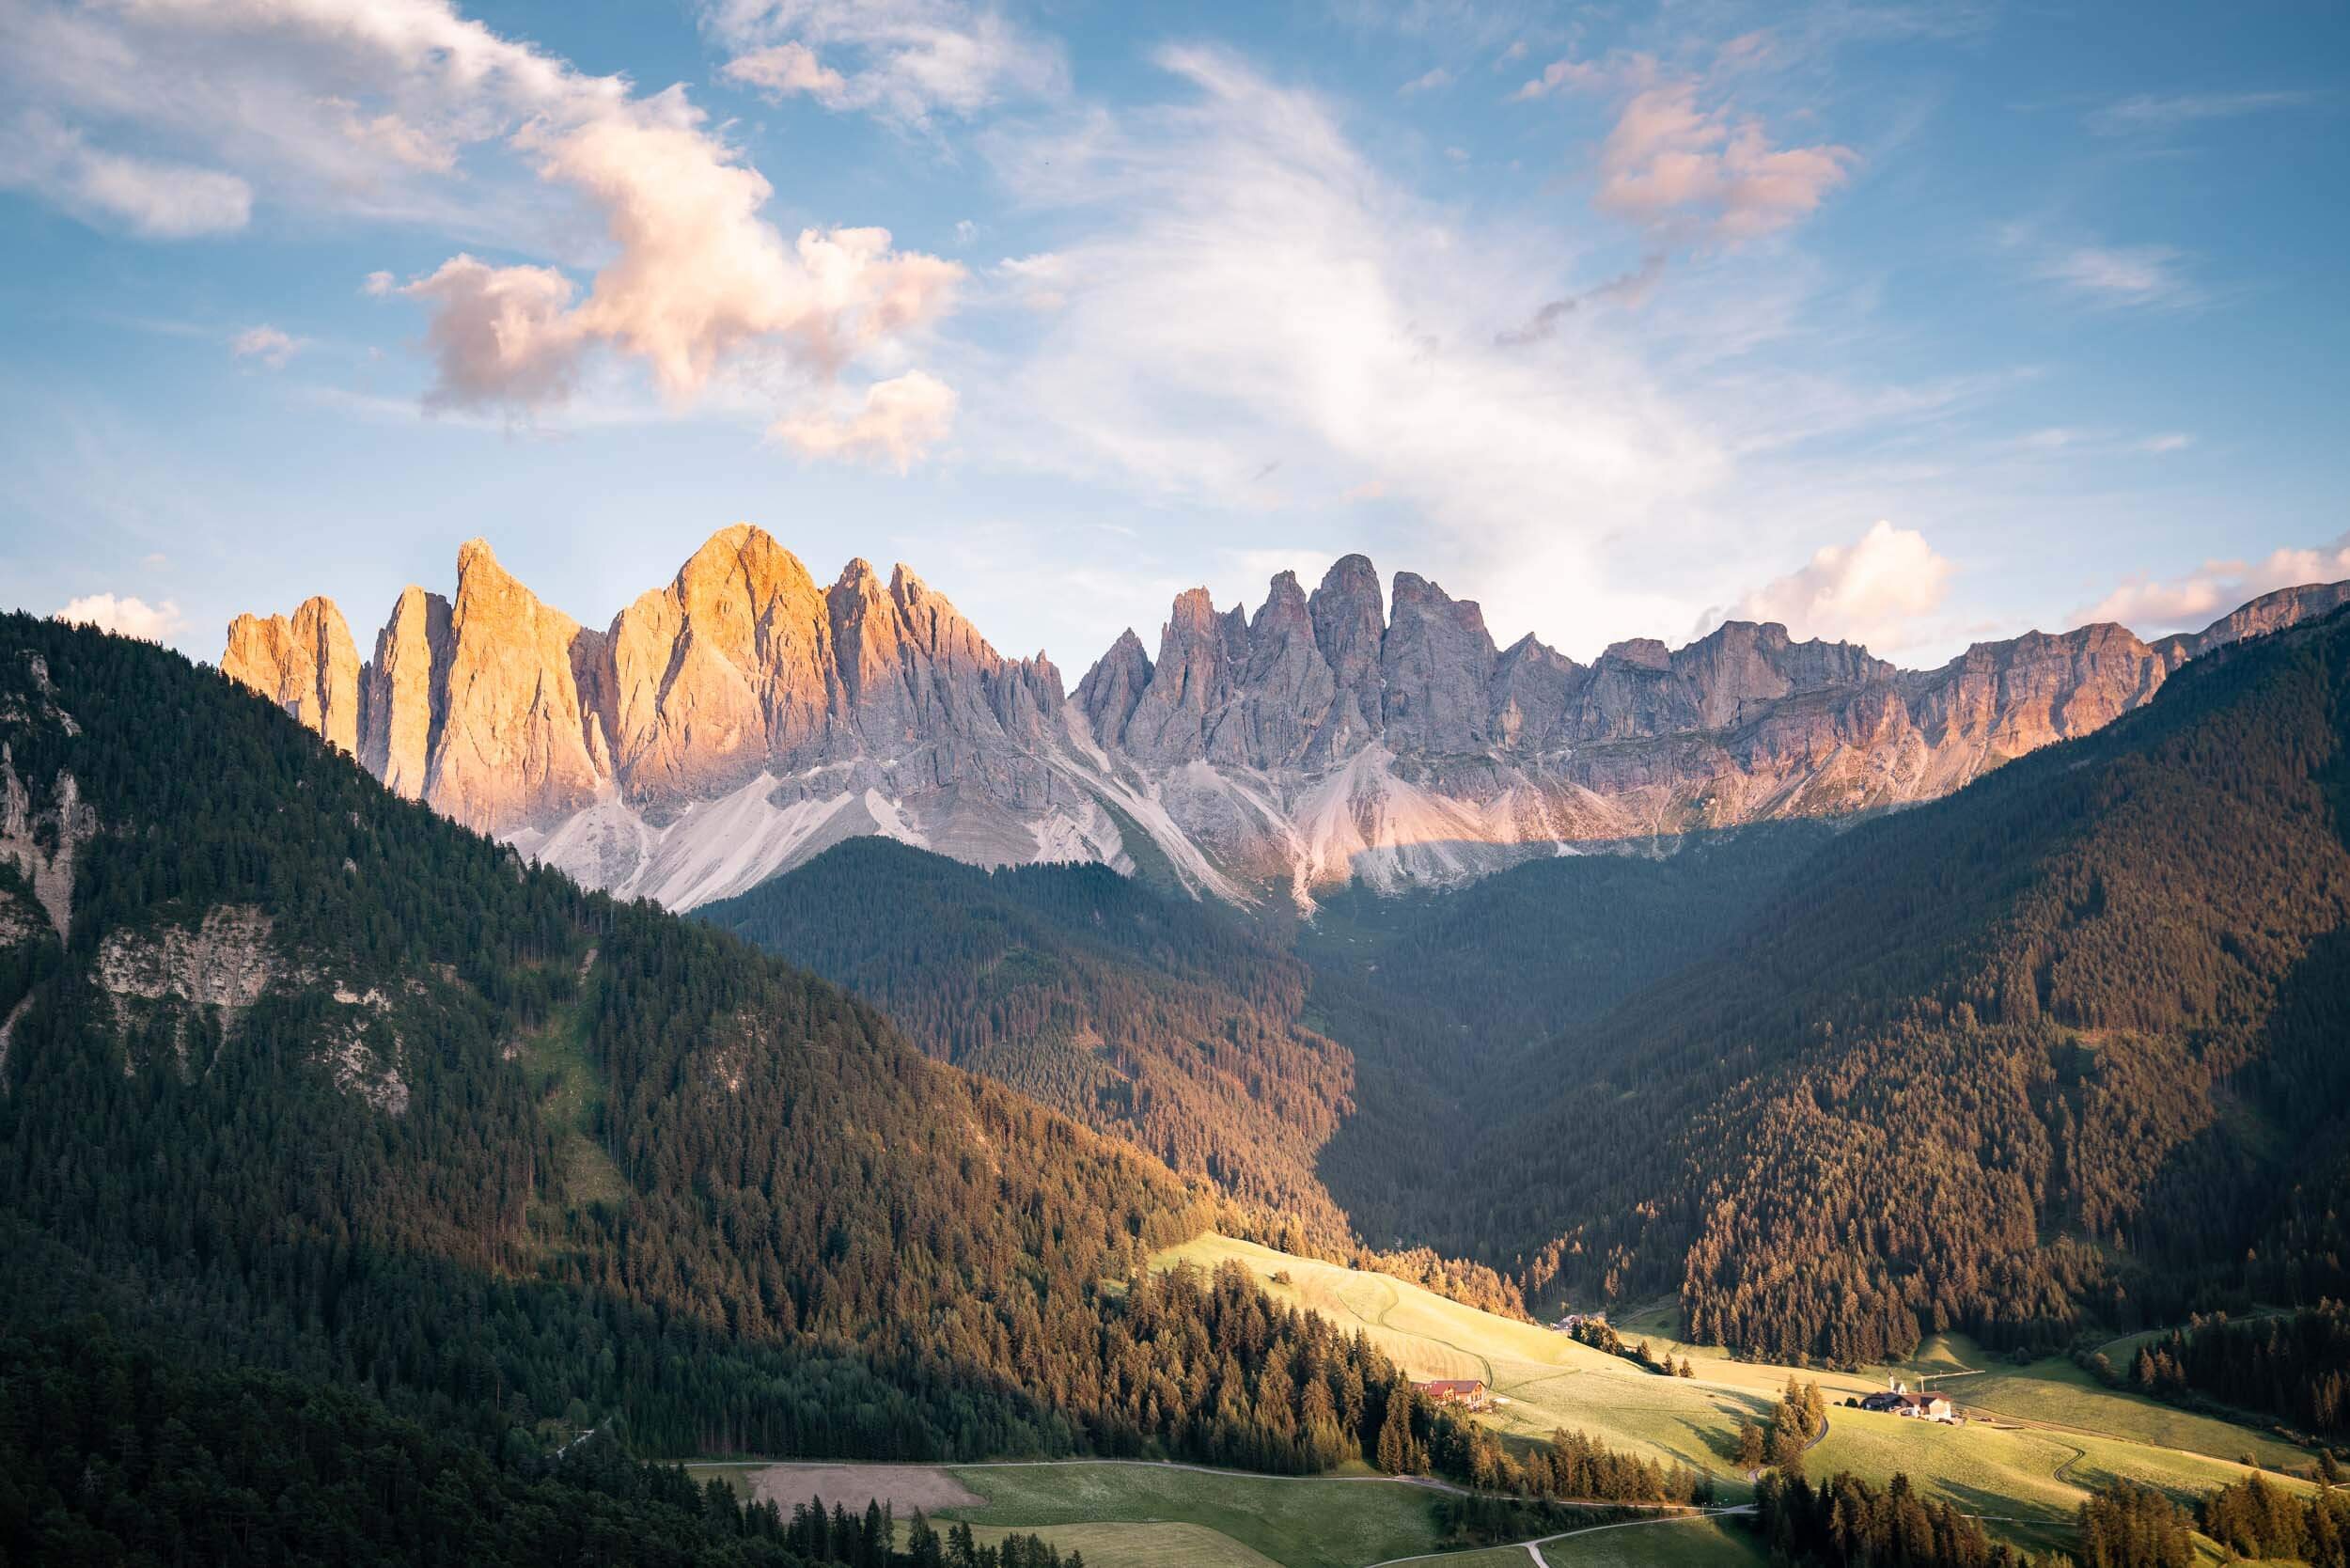 The Val di Funes in the Italian Dolomites.